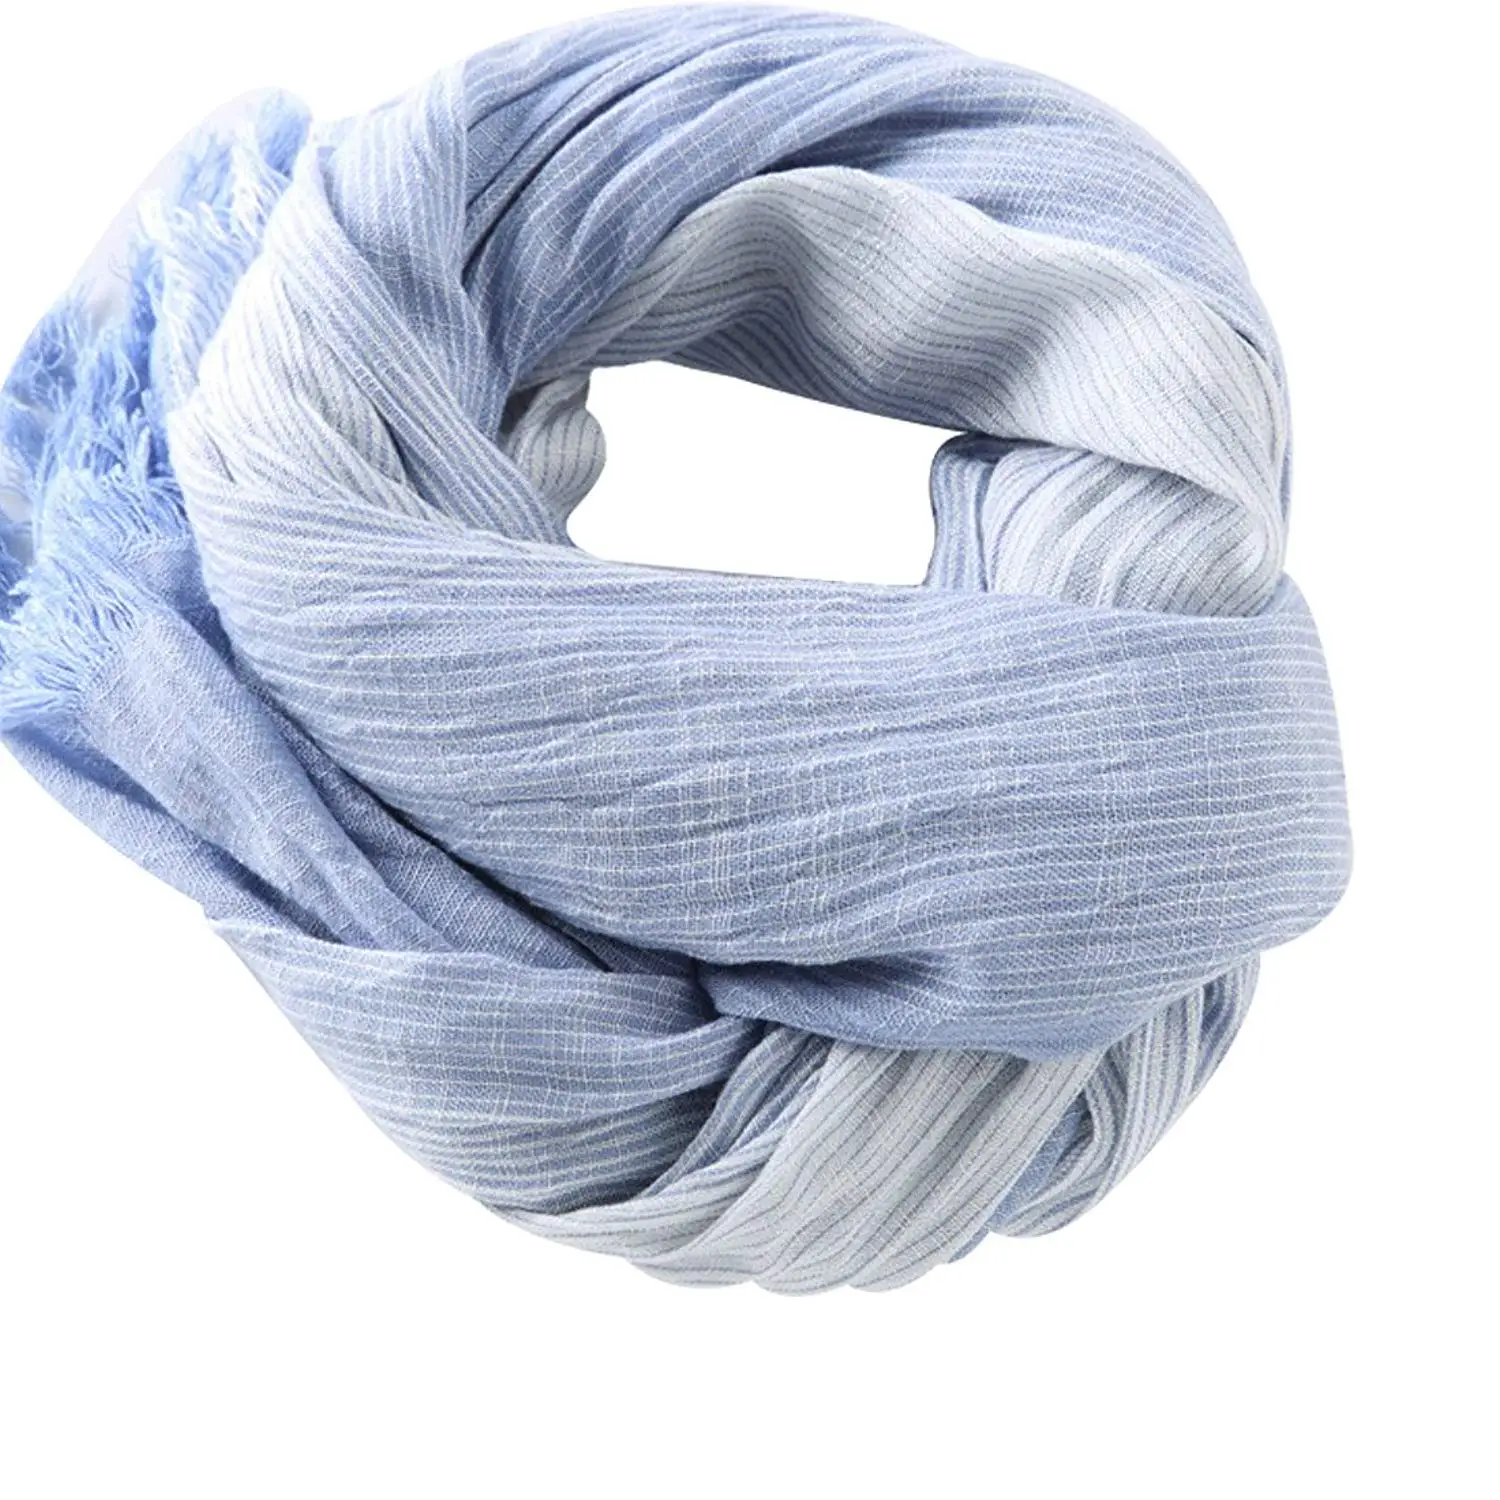 light blue linen scarf